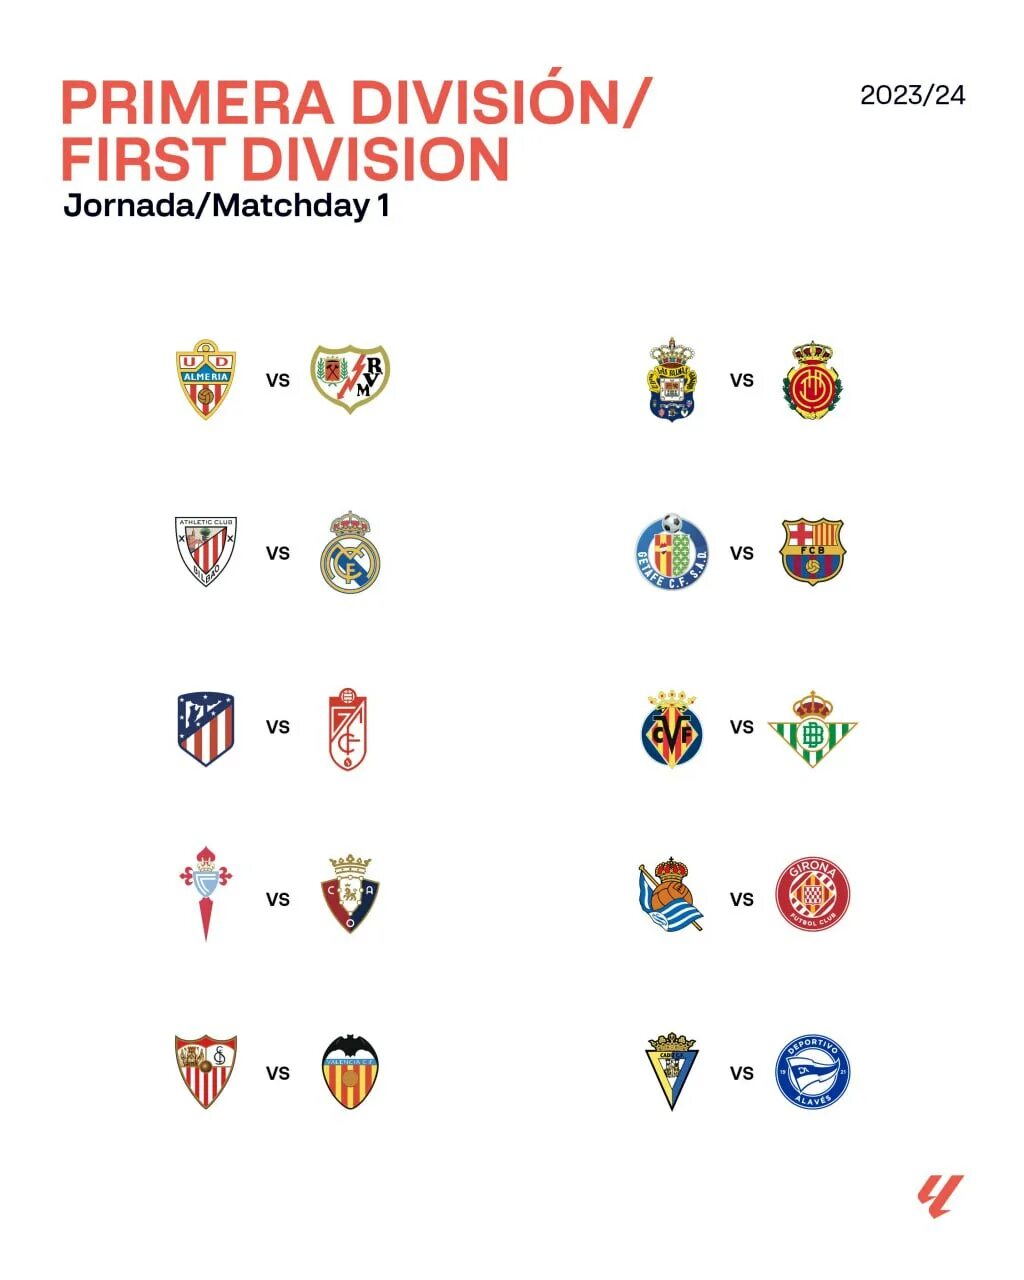 Команды ла Лиги. Испанские футбольные клубы. Чемпионат Испании по футболу 2023/2024. Календарь ла лига.